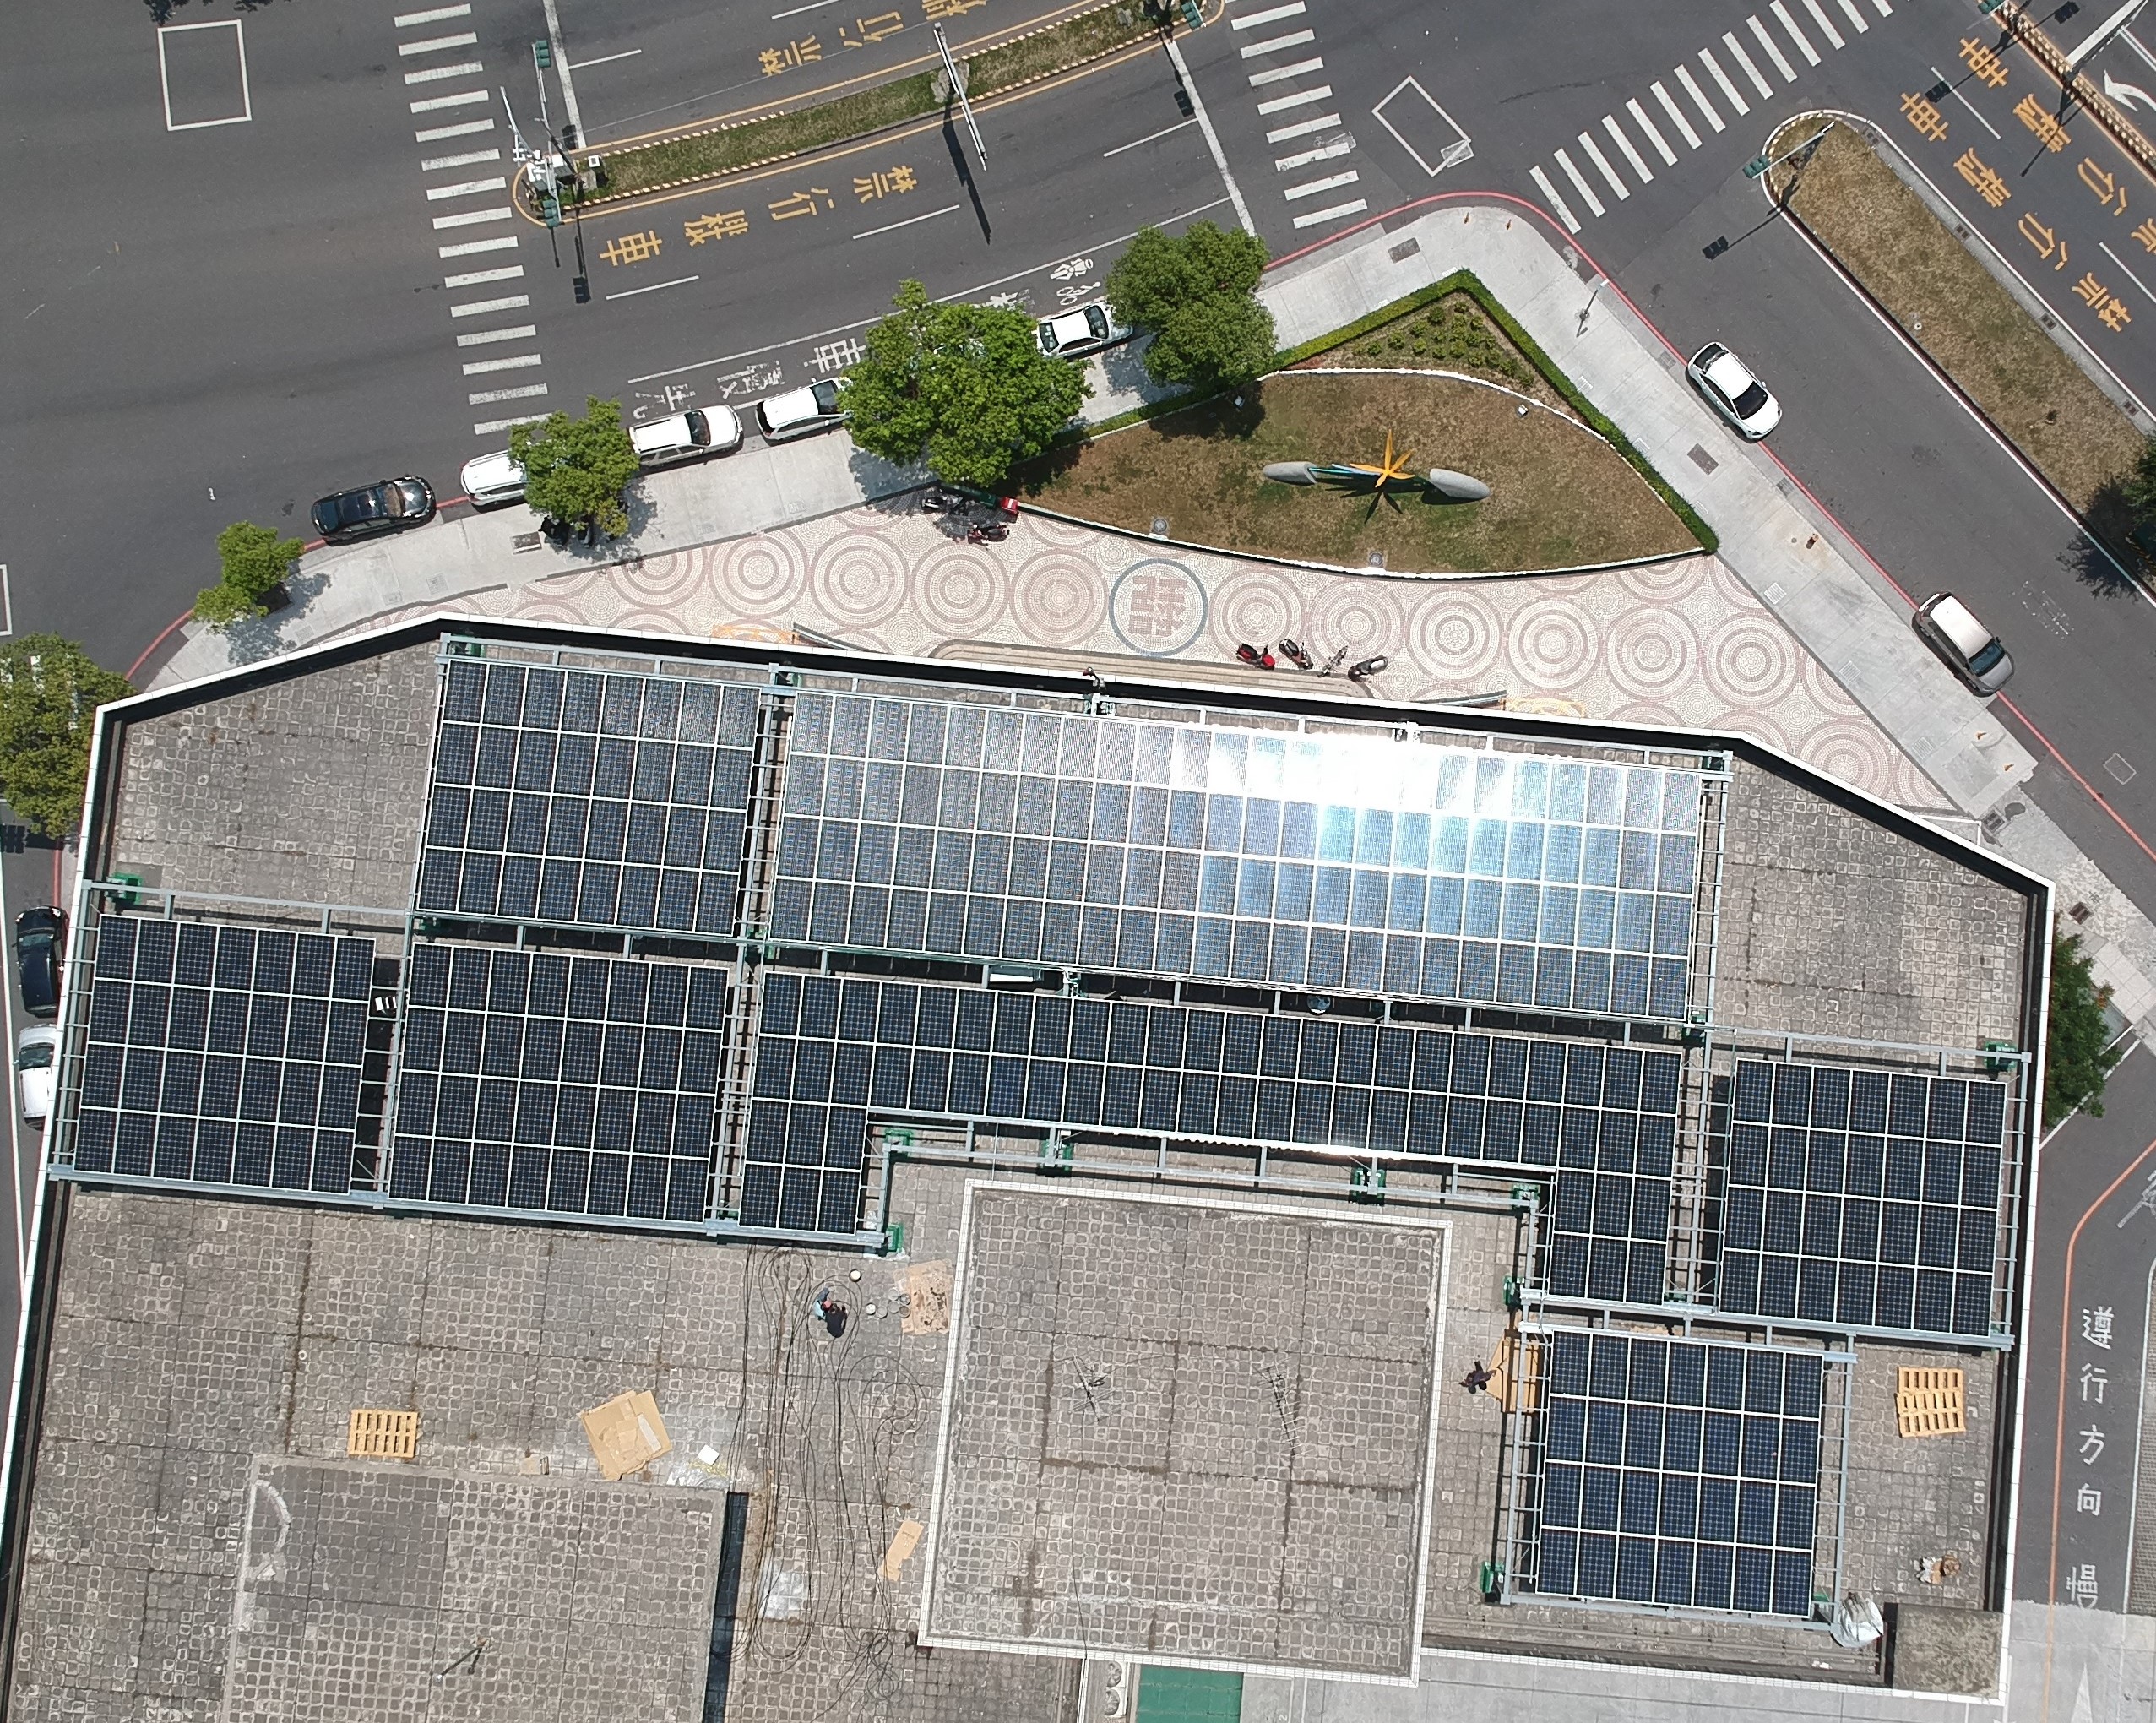 太陽能發電系統工程